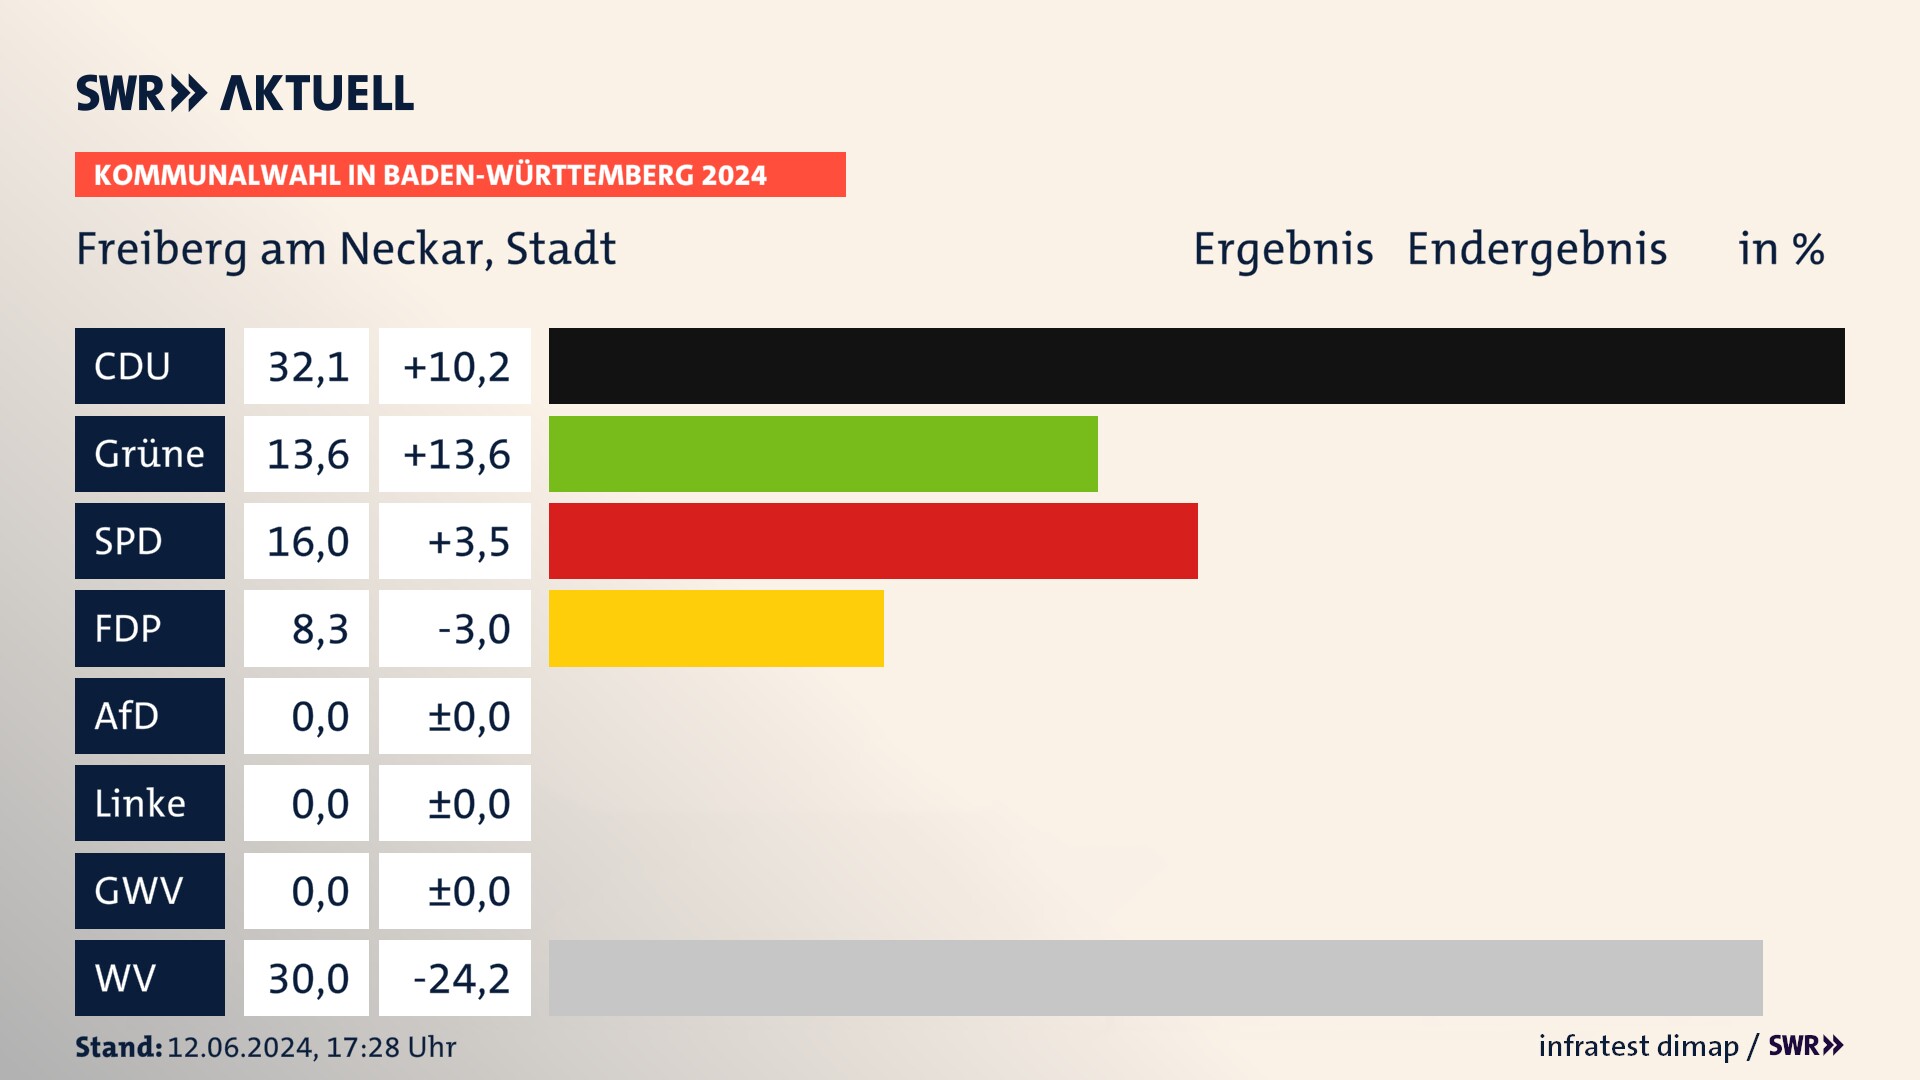 Kommunalwahl 2024 Endergebnis Zweitstimme für Freiberg am Neckar. In Freiberg am Neckar, Stadt erzielt die CDU 32,1 Prozent der gültigen  Stimmen. Die Grünen landen bei 13,6 Prozent. Die SPD erreicht 16,0 Prozent. Die FDP kommt auf 8,3 Prozent. Die Wählervereinigungen landen bei 30,0 Prozent.